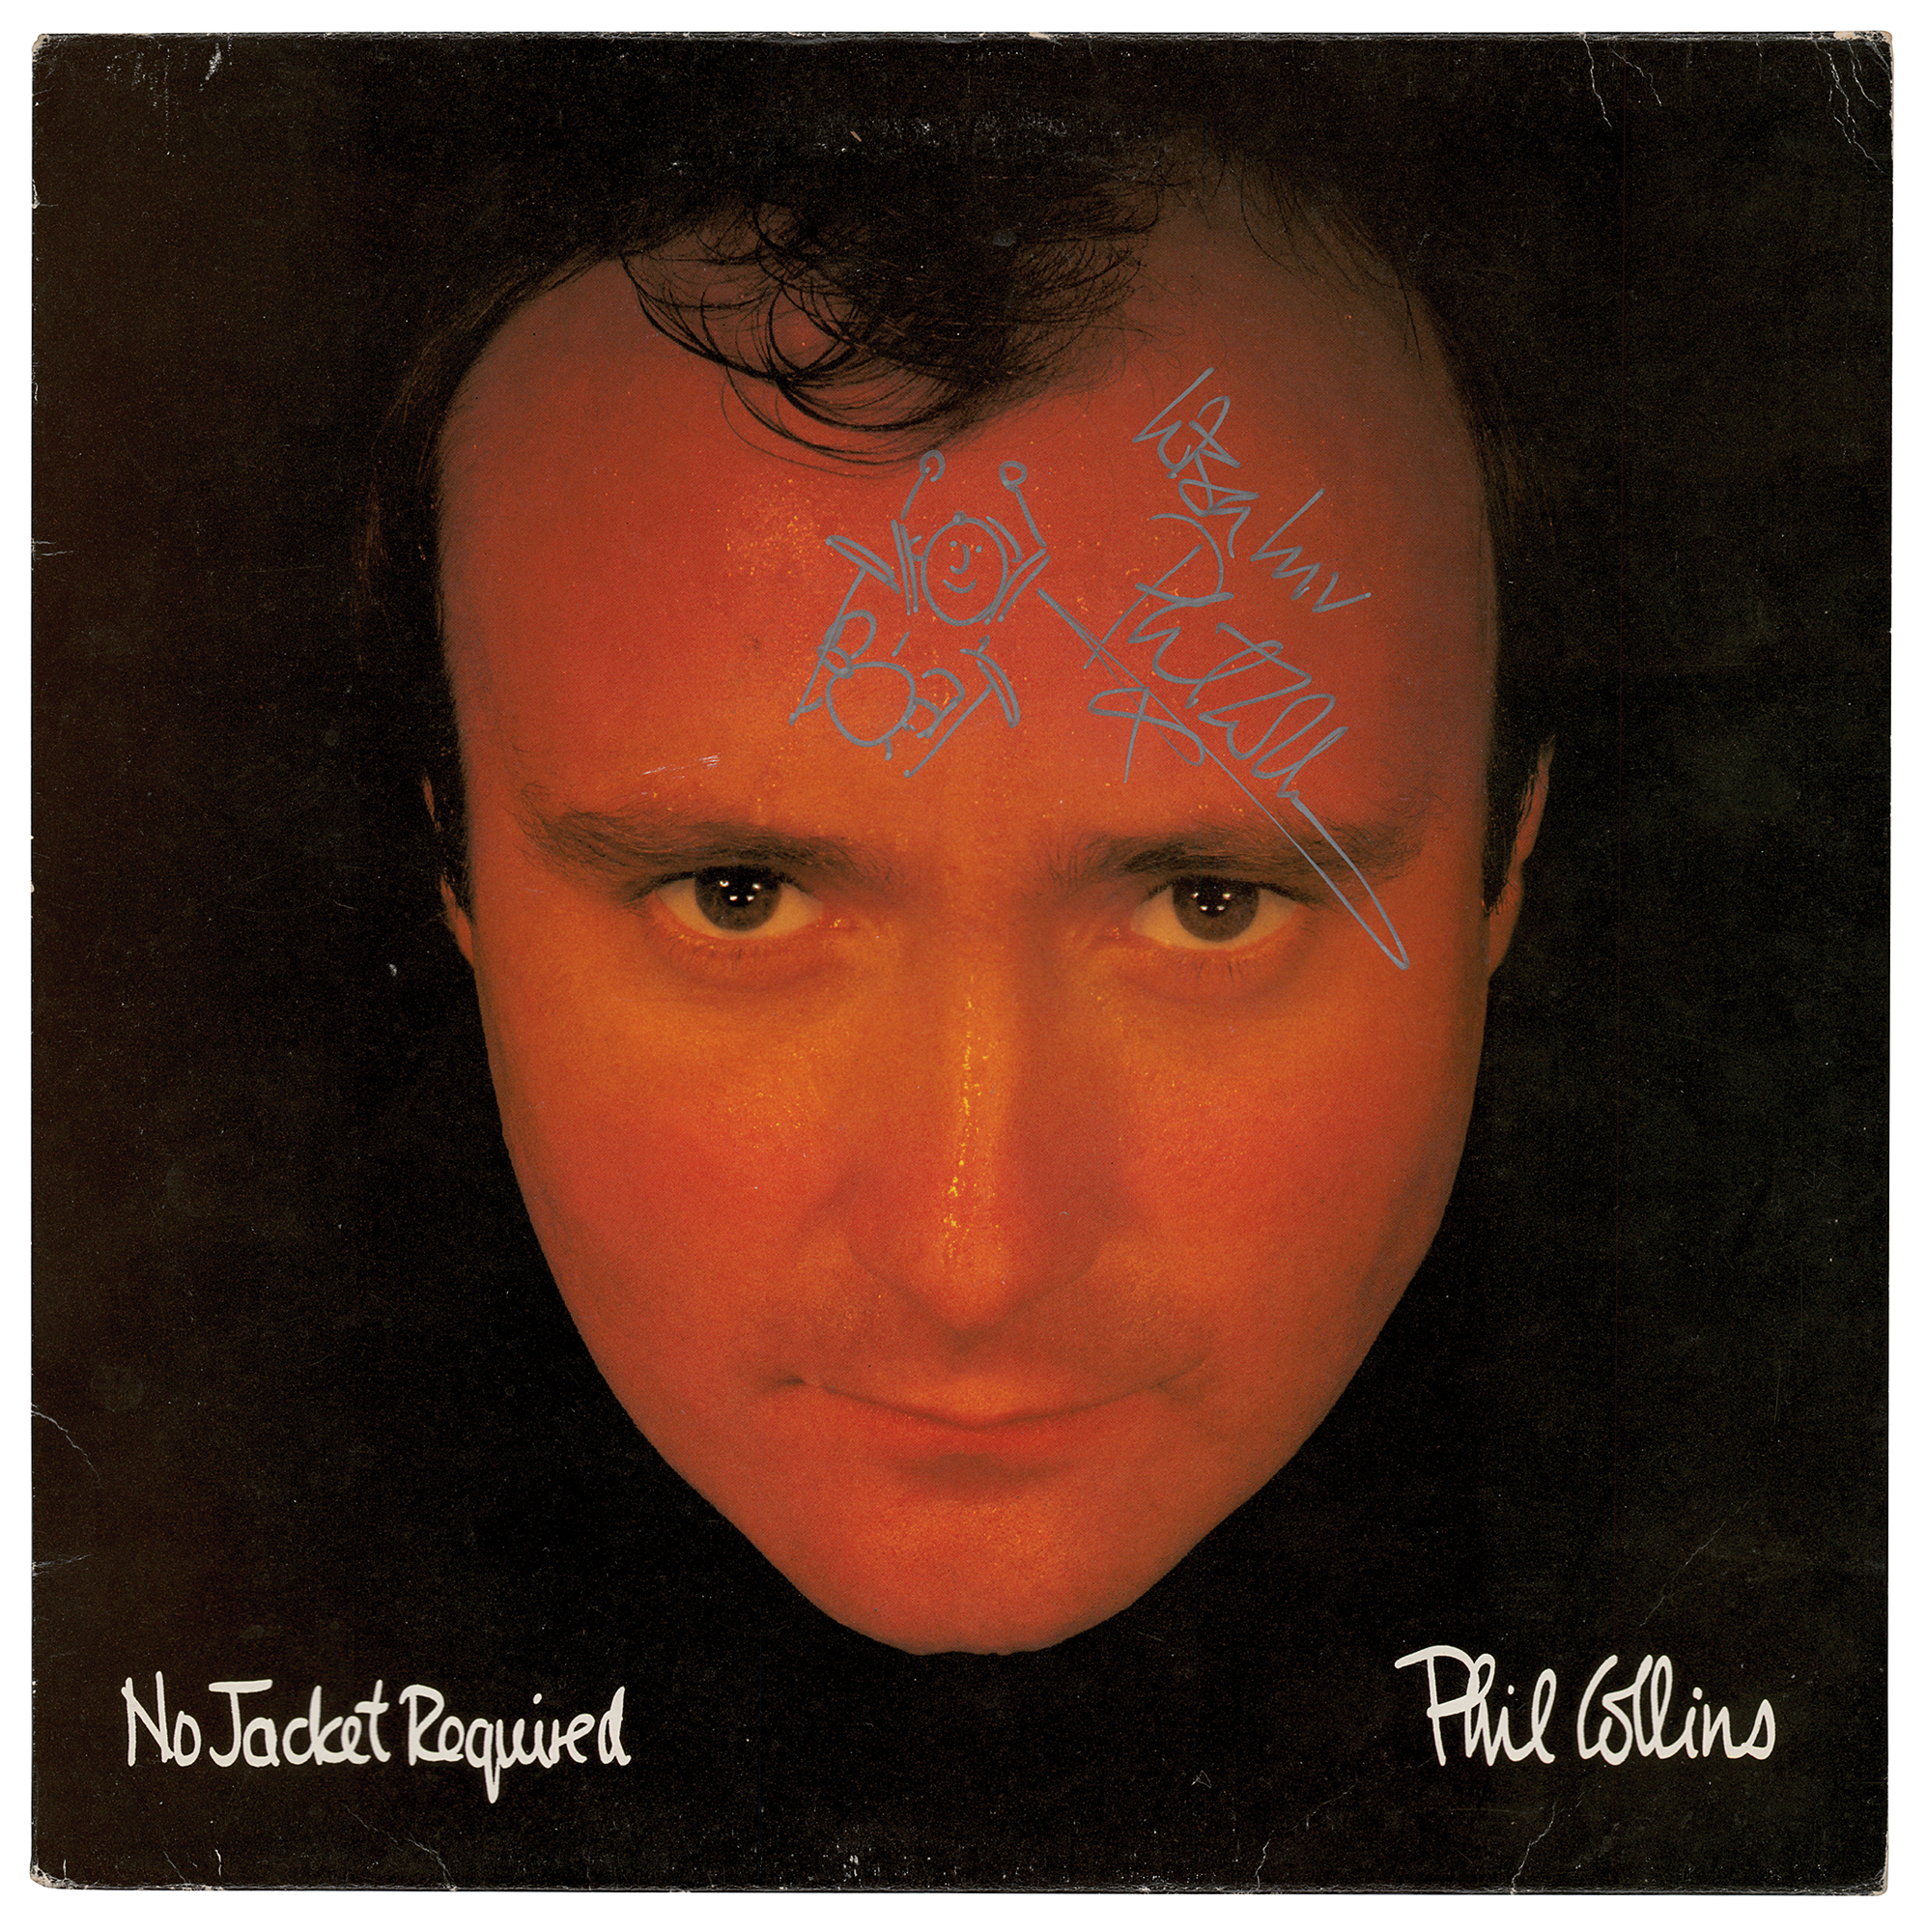 Lot #5375 Phil Collins Signed Album